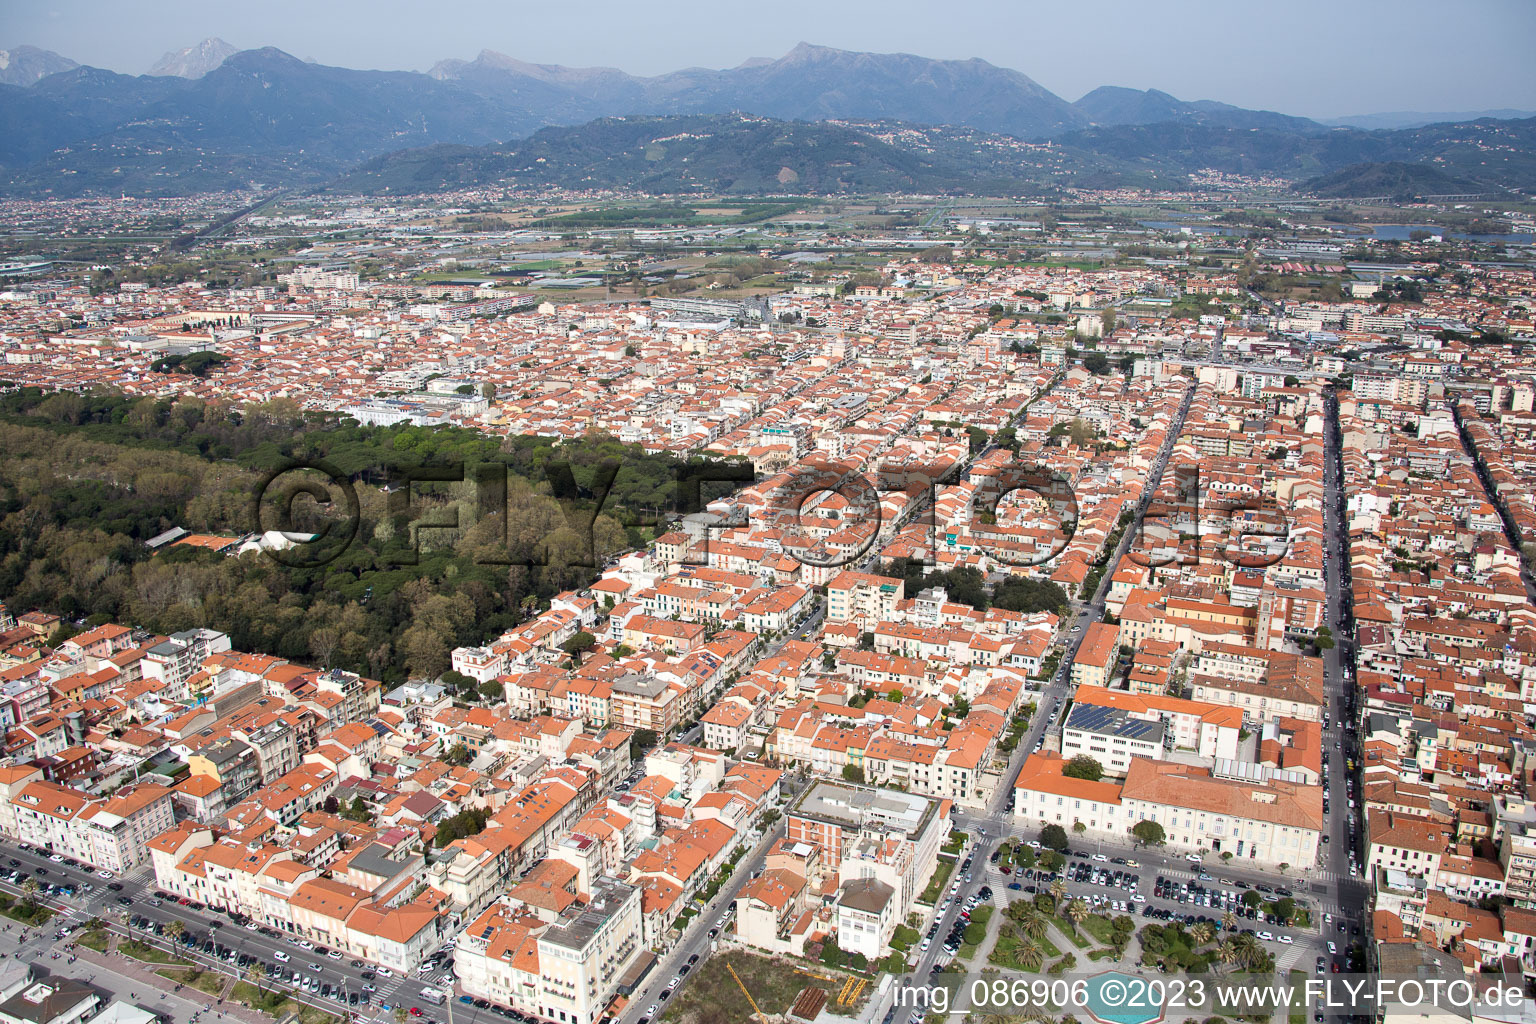 Viareggio dans le département Toscane, Italie vu d'un drone